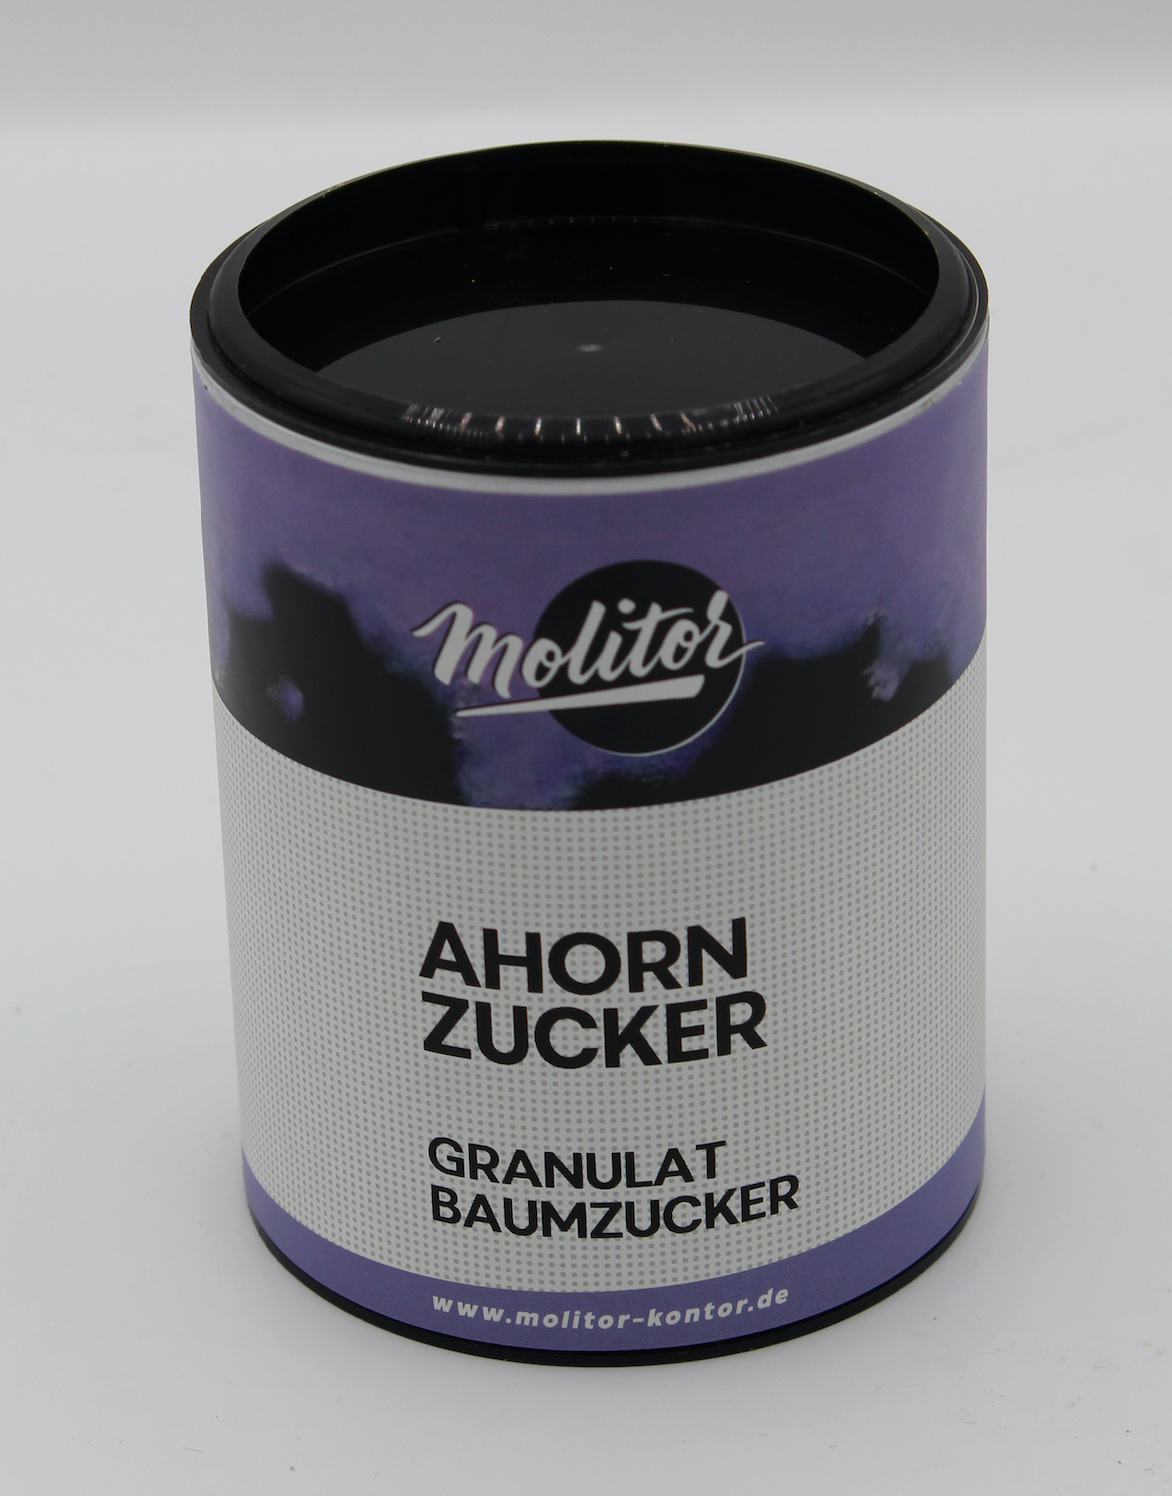 Ahorn Zucker - AhornZucker